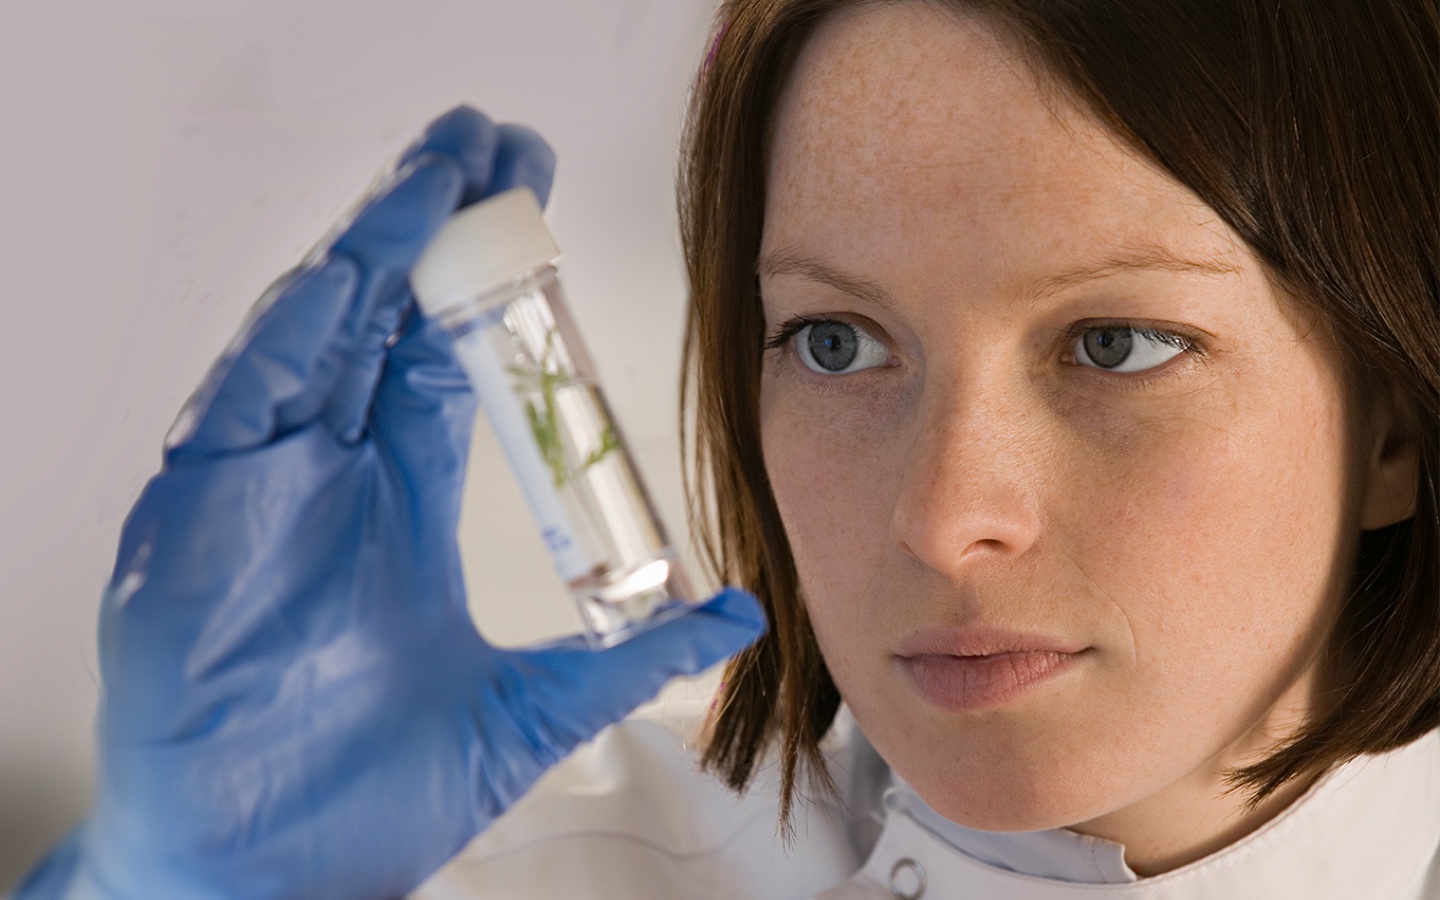 Close-up van vrouwelijke onderzoeker die een kweekbuisje bekijkt met blauwe chirurgische handschoenen aan.